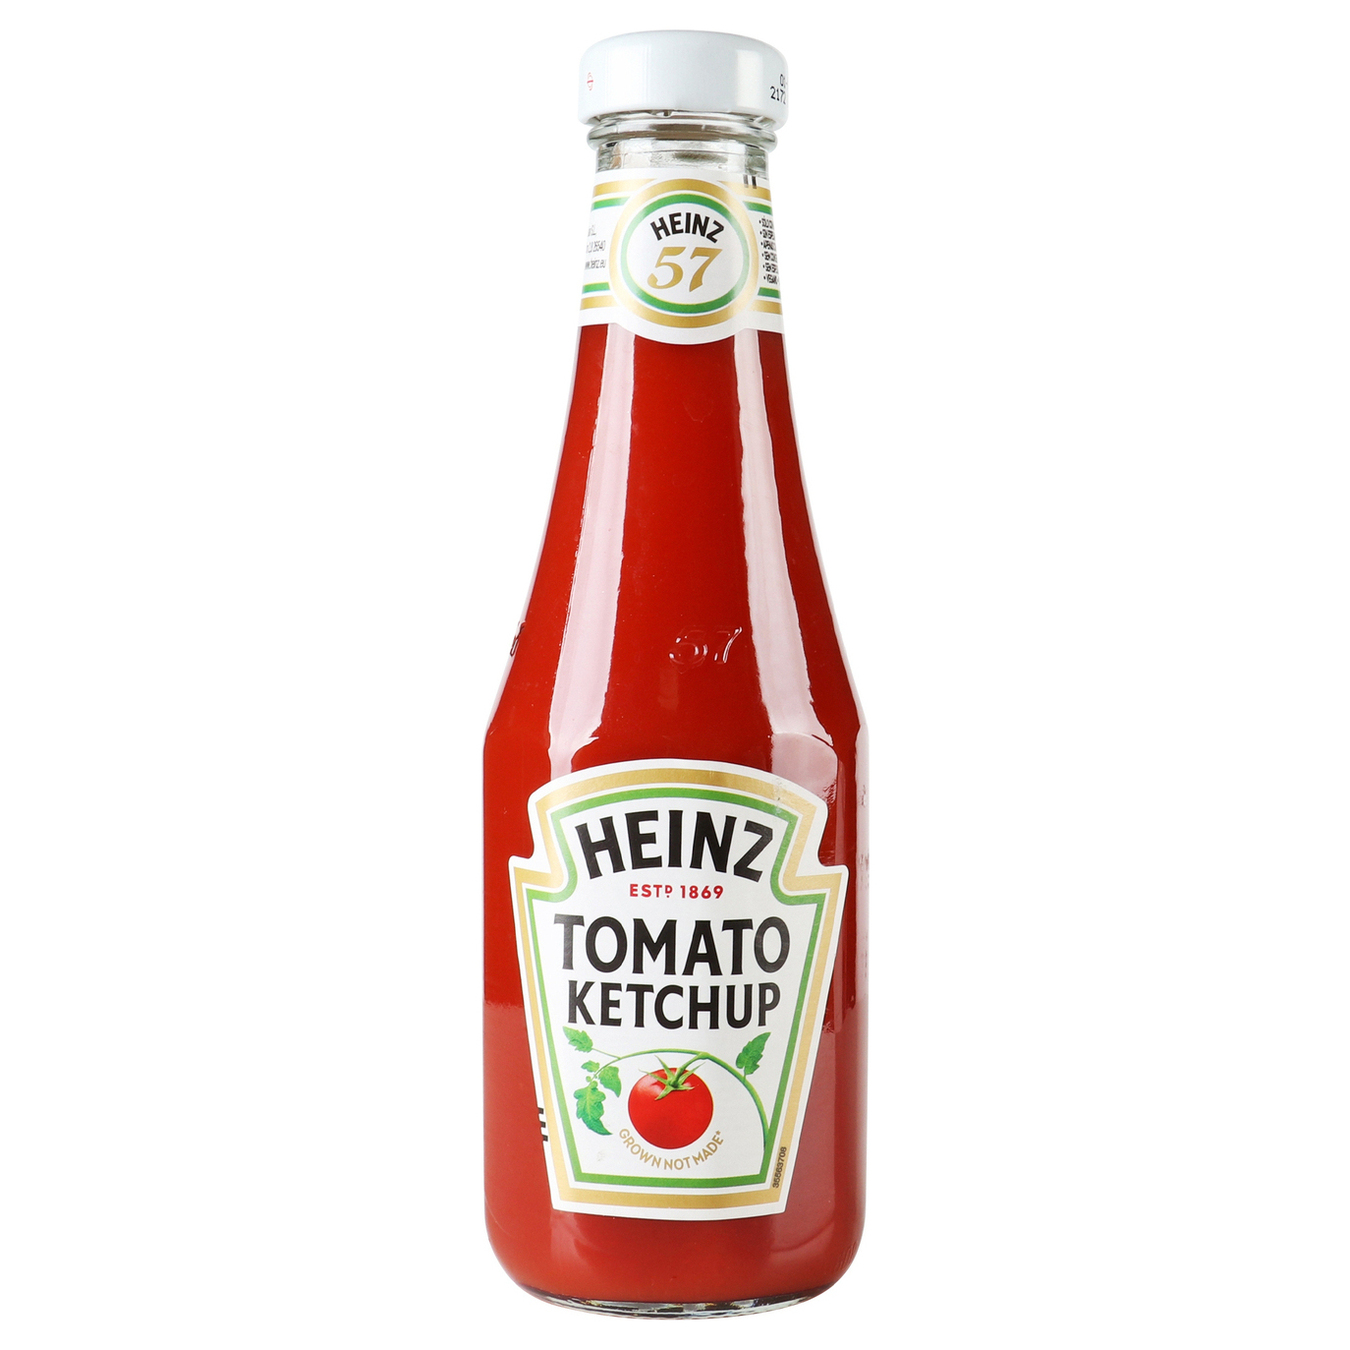 Heinz tomato ketchup 342g